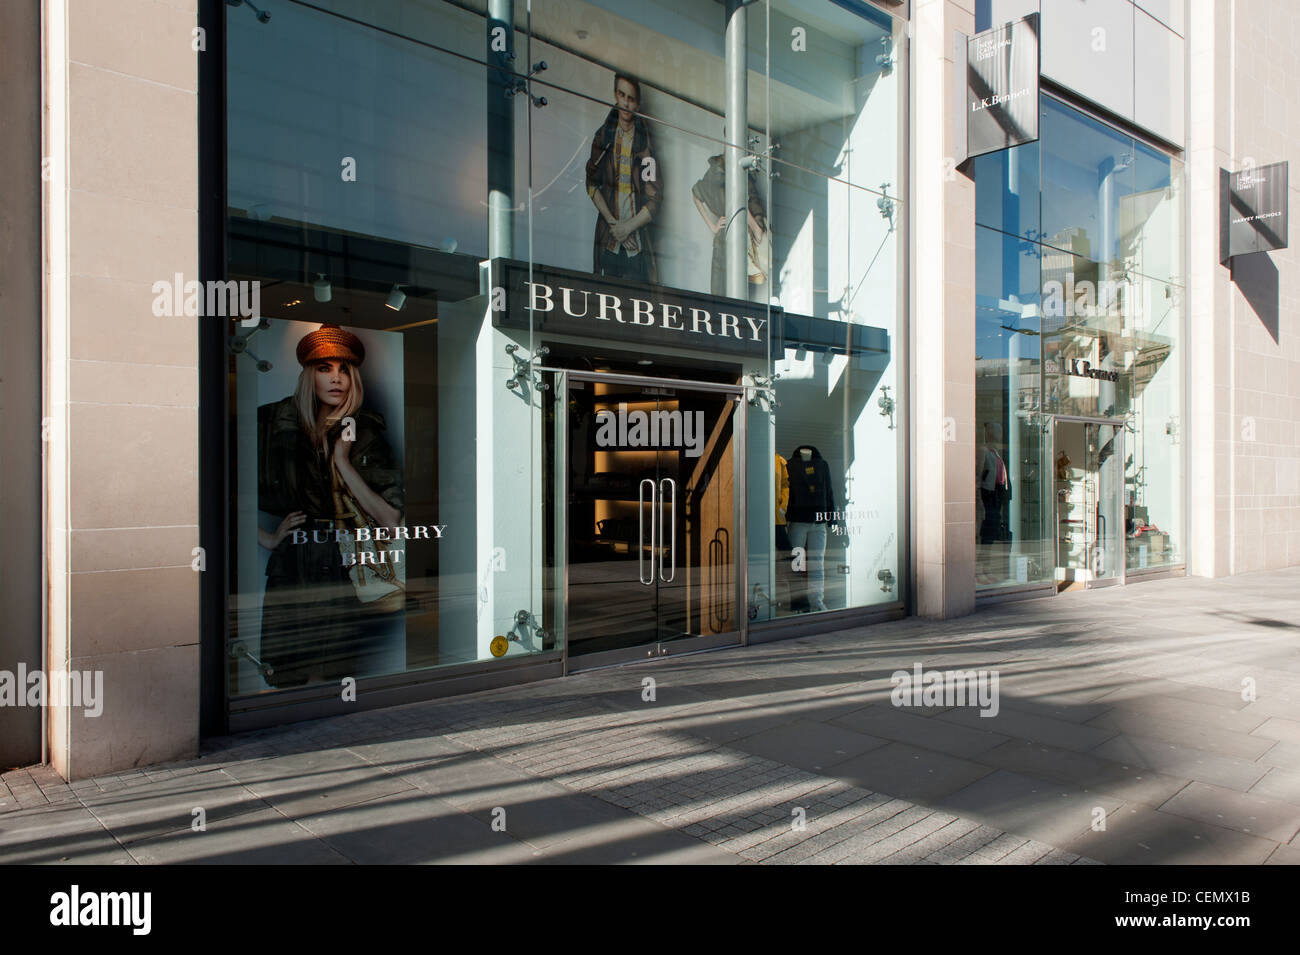 Il Burberry negozio di abbigliamento situato sulla nuova Cattedrale Street nel centro della città di Manchester, UK (solo uso editoriale). Foto Stock